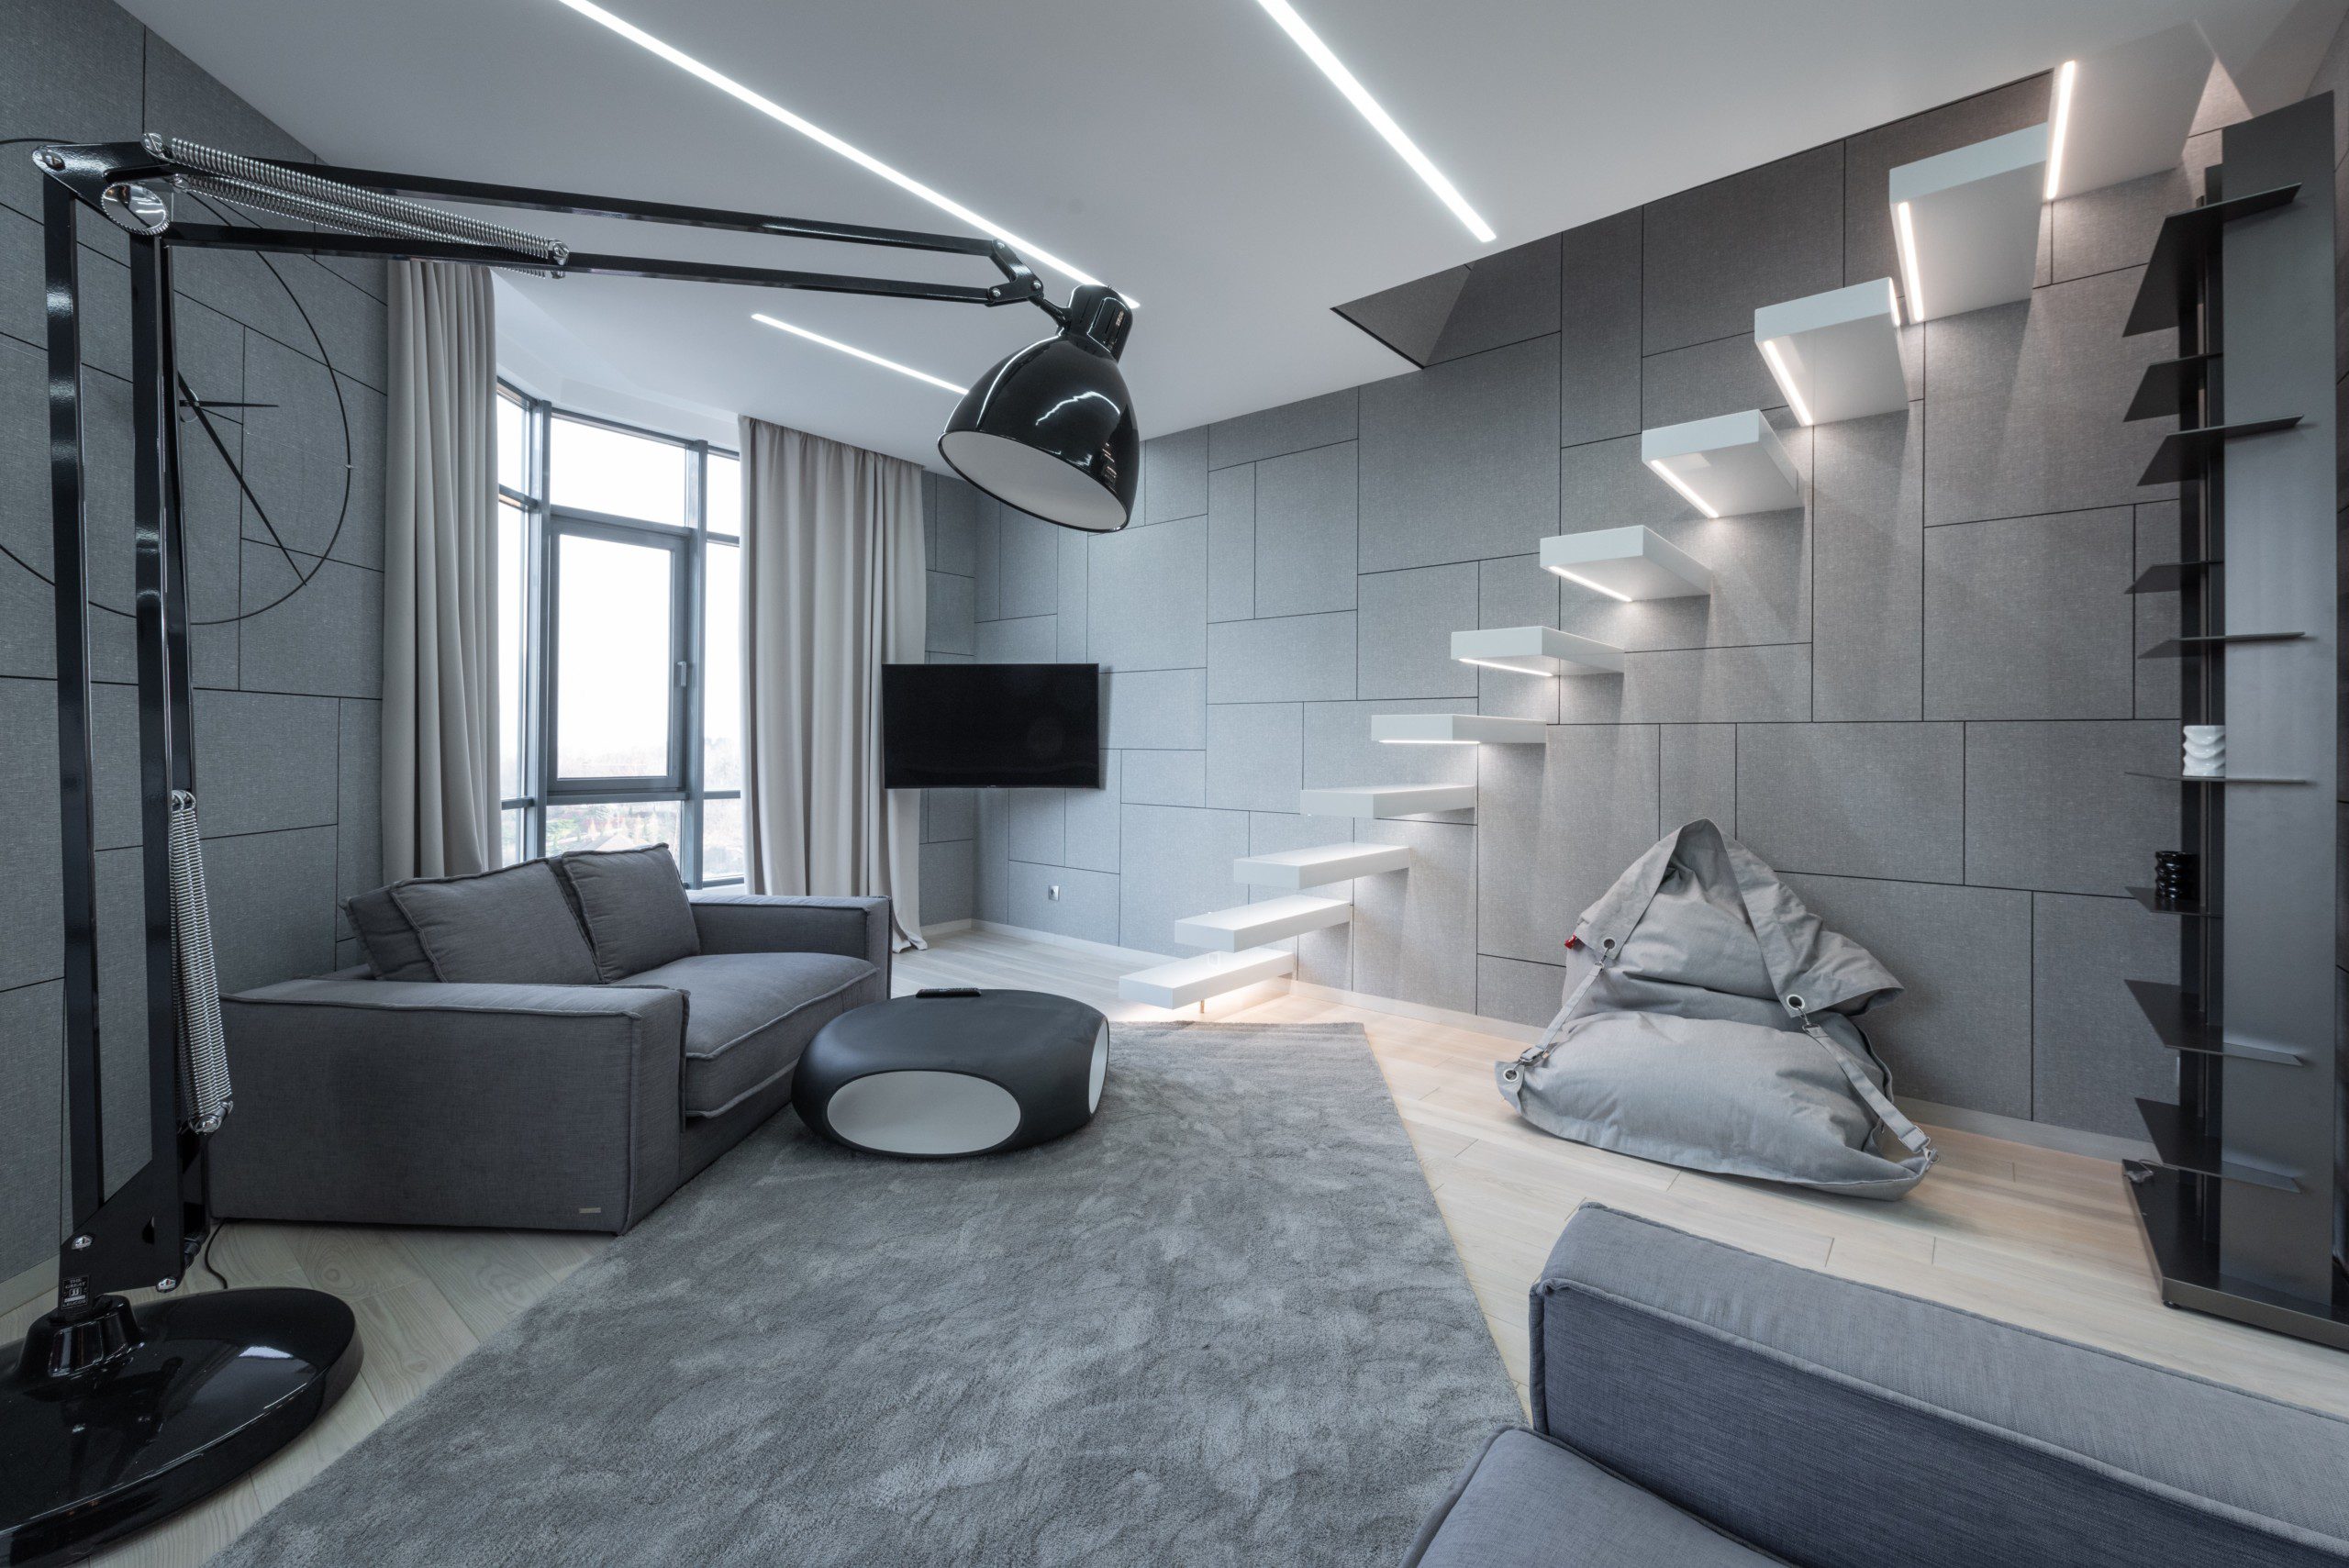 Sala de estar minimalista, em tons neutros, escada suspensa e LEDs. 